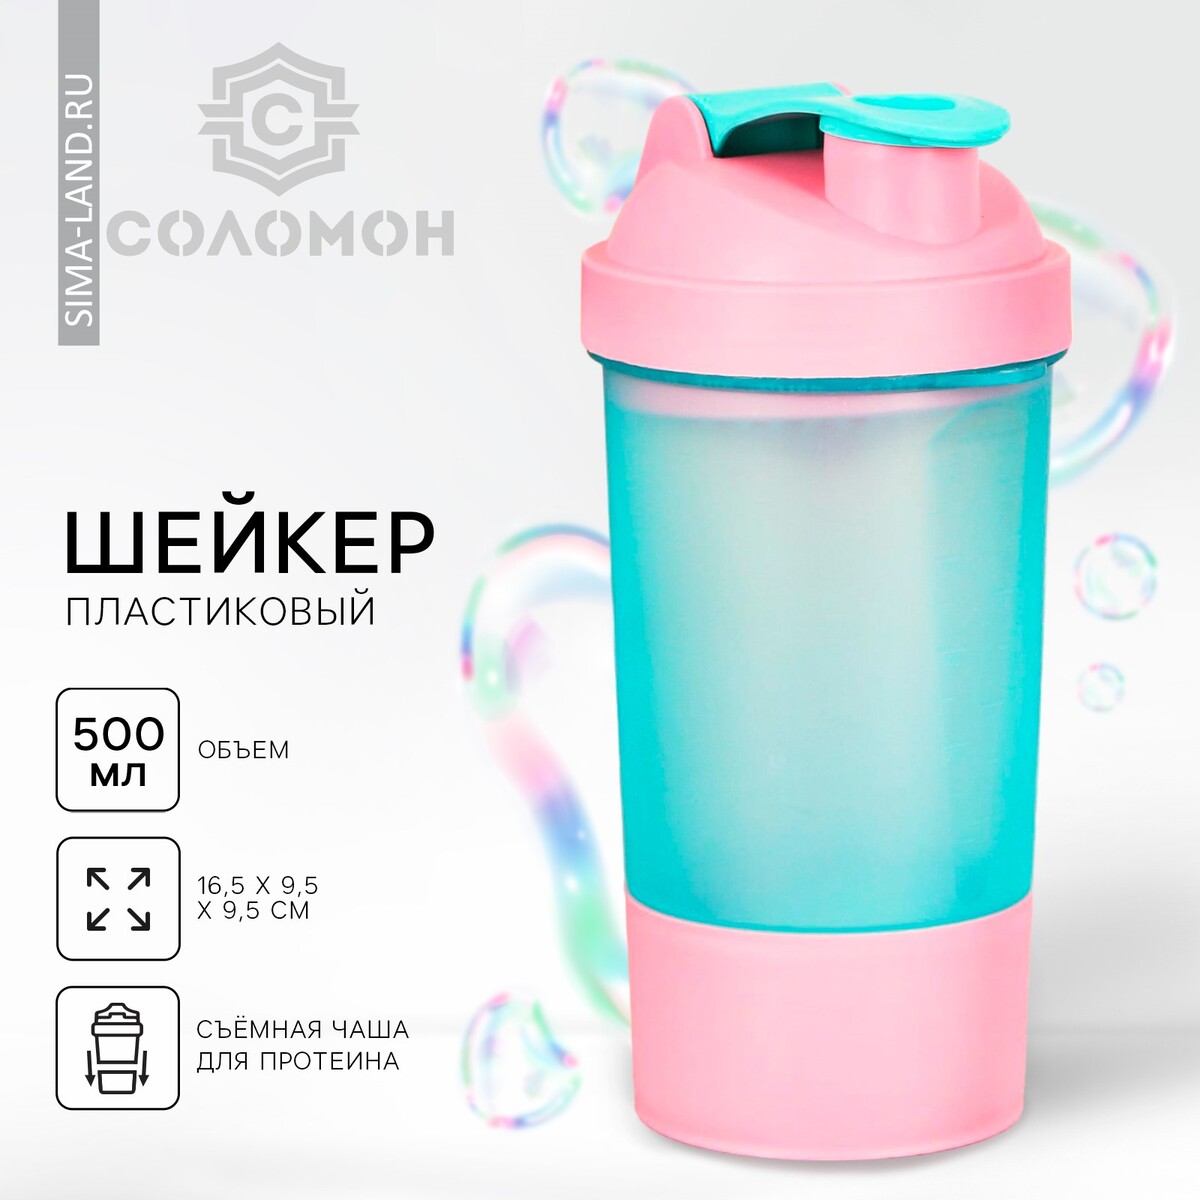 Шейкер спортивный с чашей под протеин, голубо-розовый, 500 мл шейкер спортивный с чашей под протеин бело оранжевый 500 мл